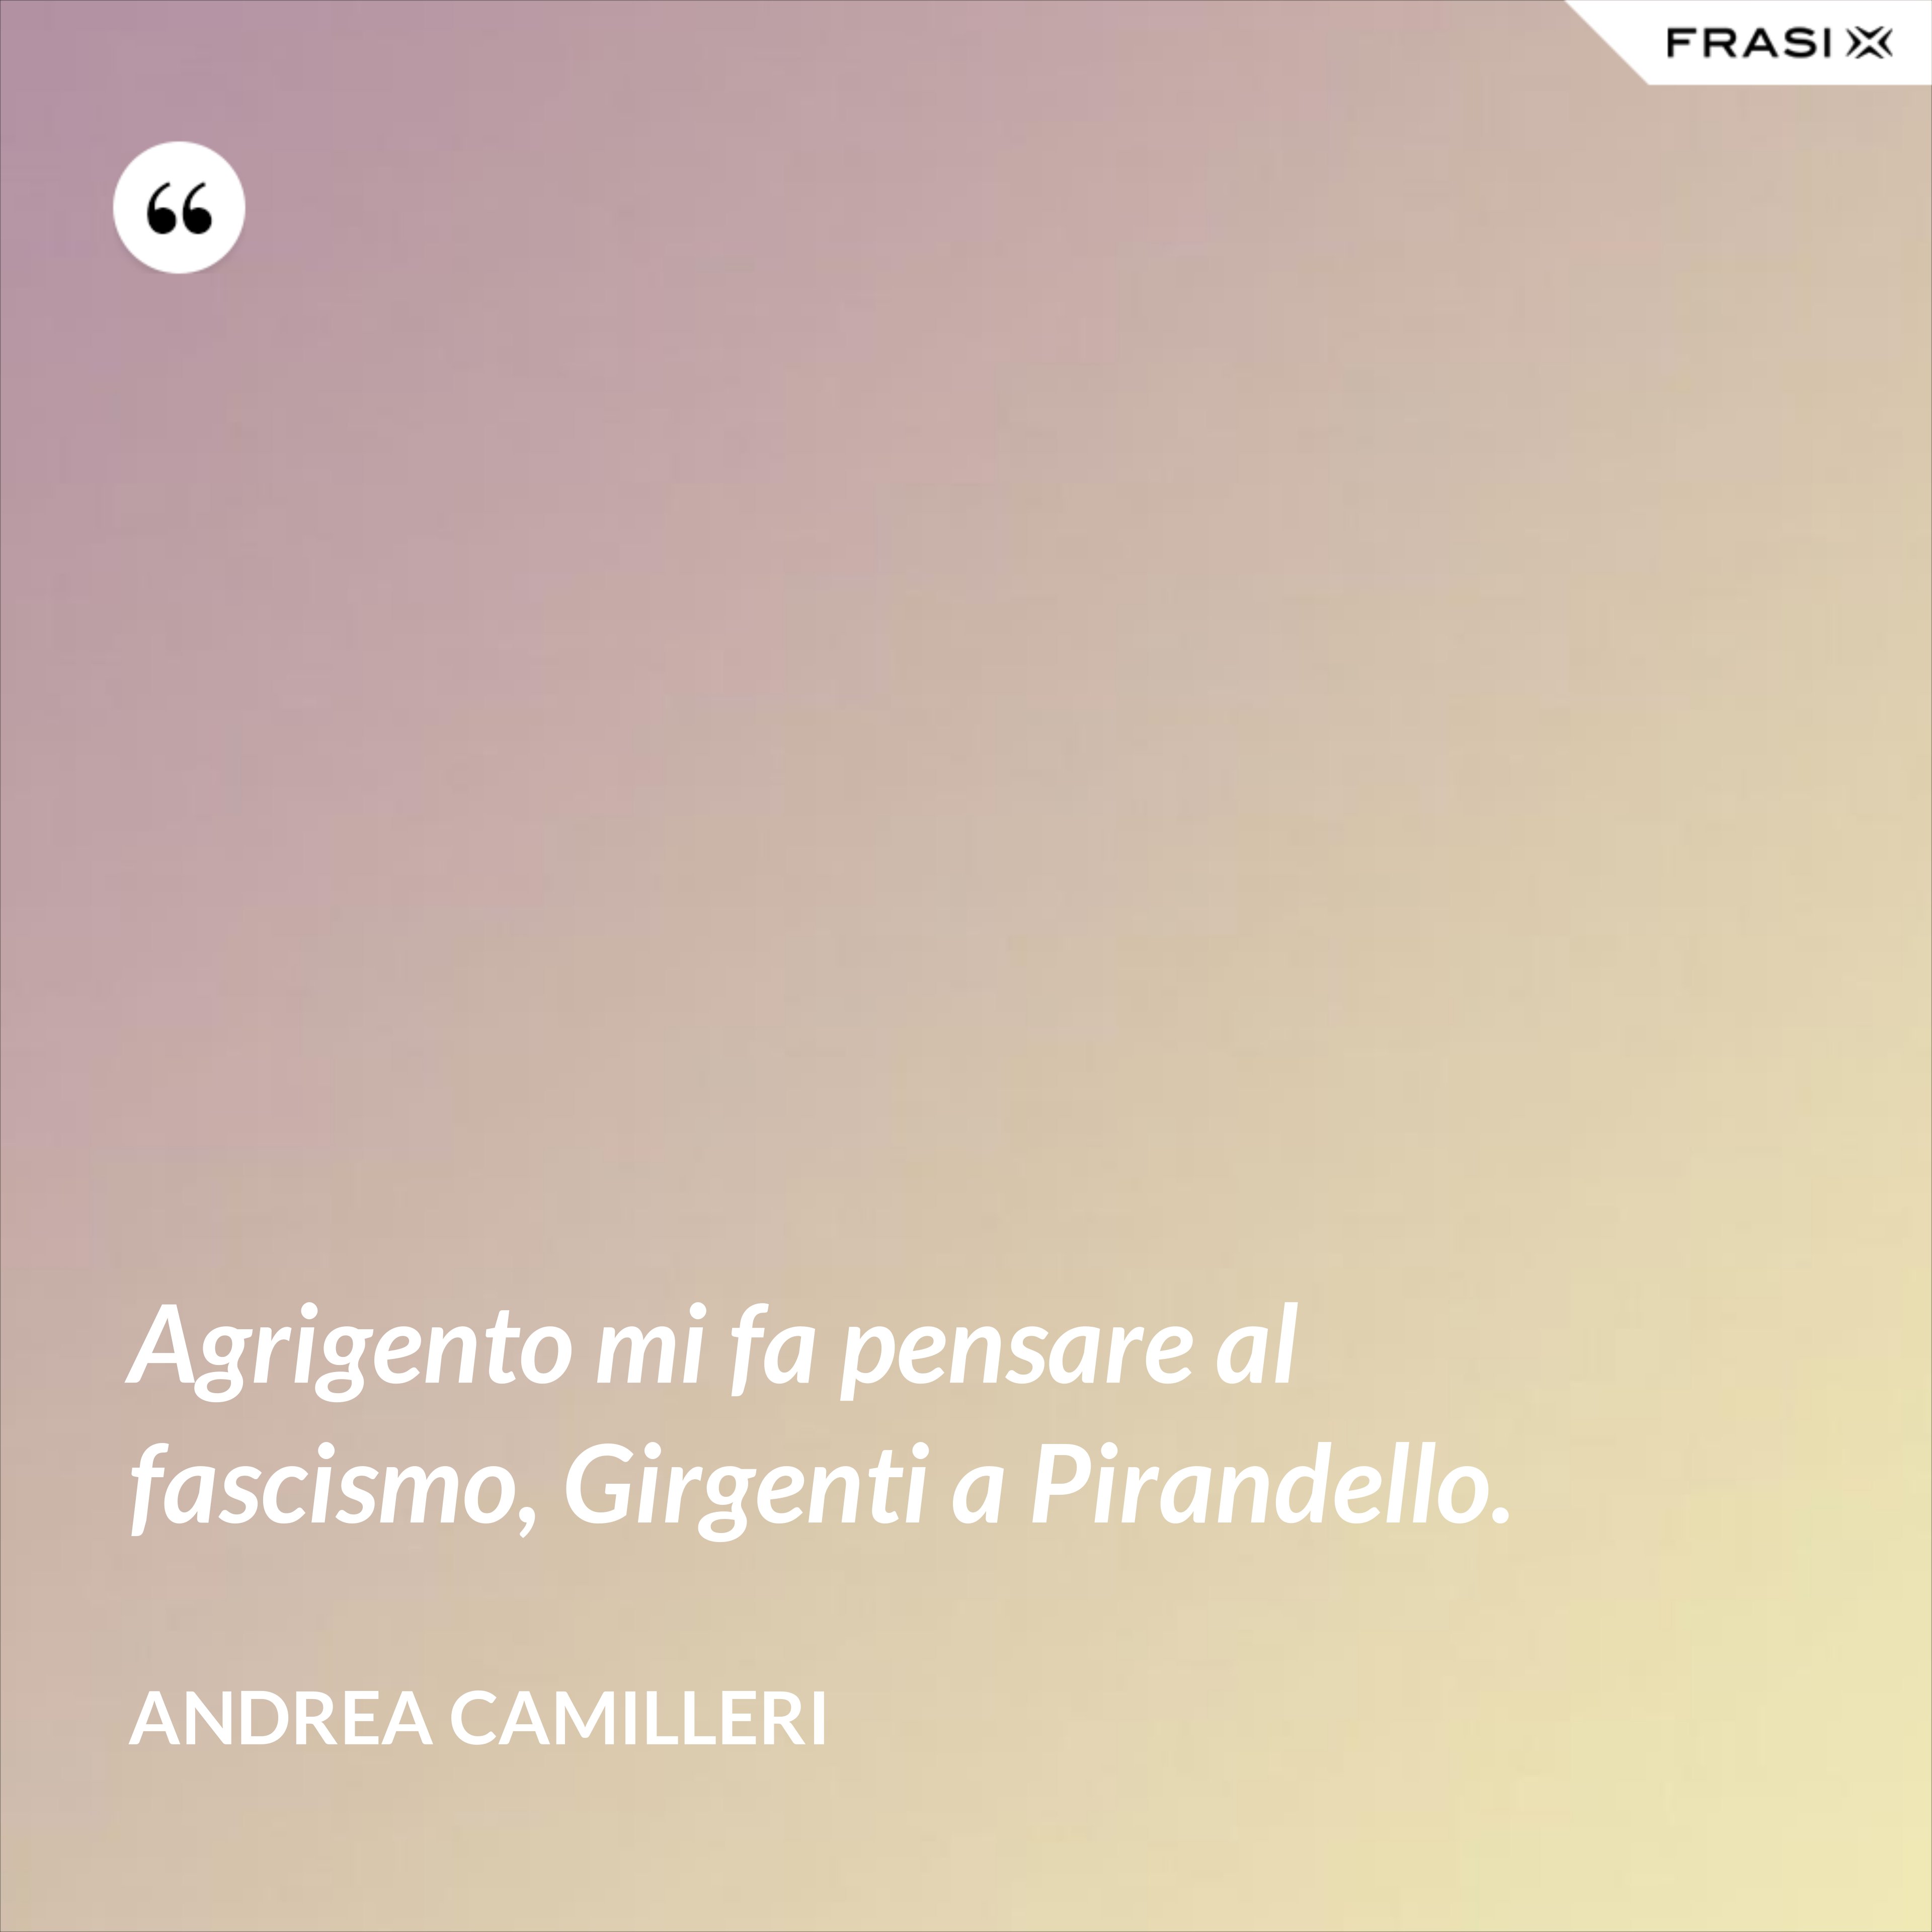 Agrigento mi fa pensare al fascismo, Girgenti a Pirandello. - Andrea Camilleri